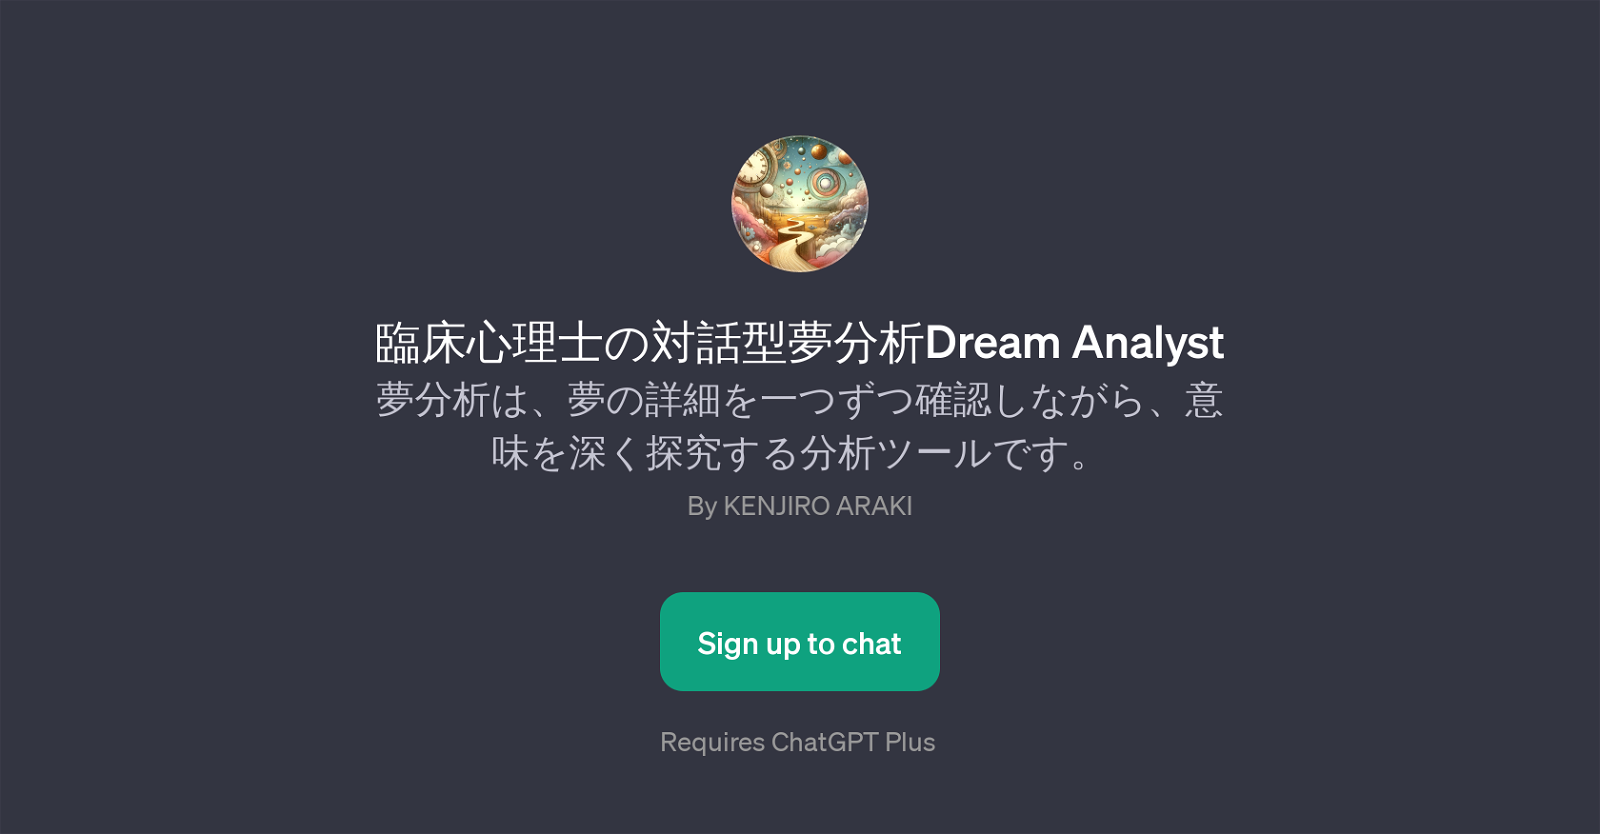 Dream Analyst website